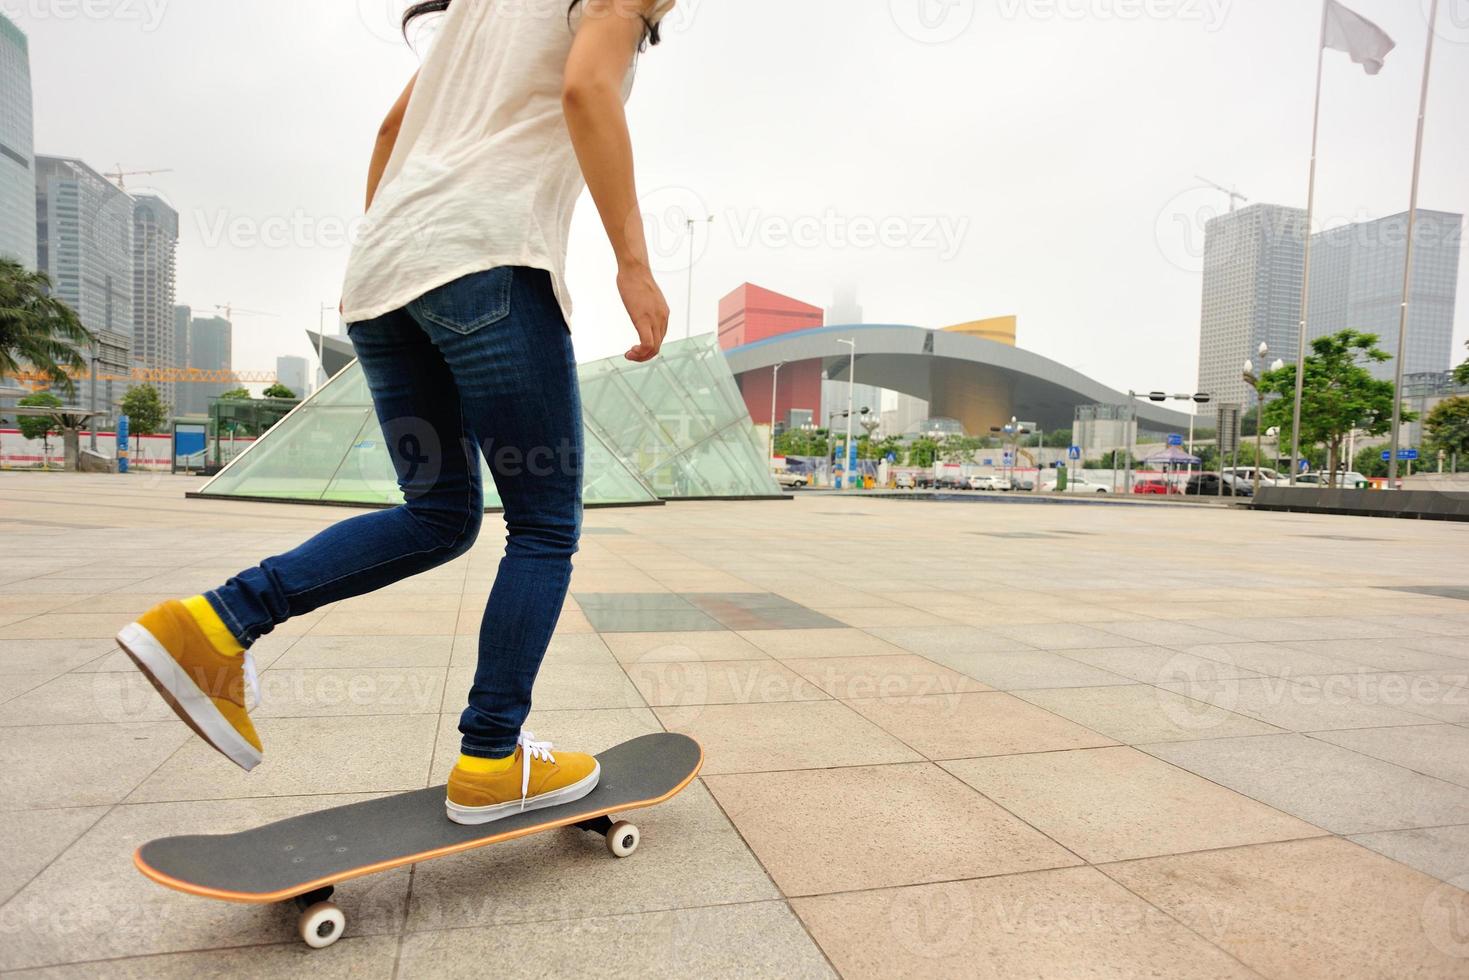 Beschleunigung der Skateboardfrau foto